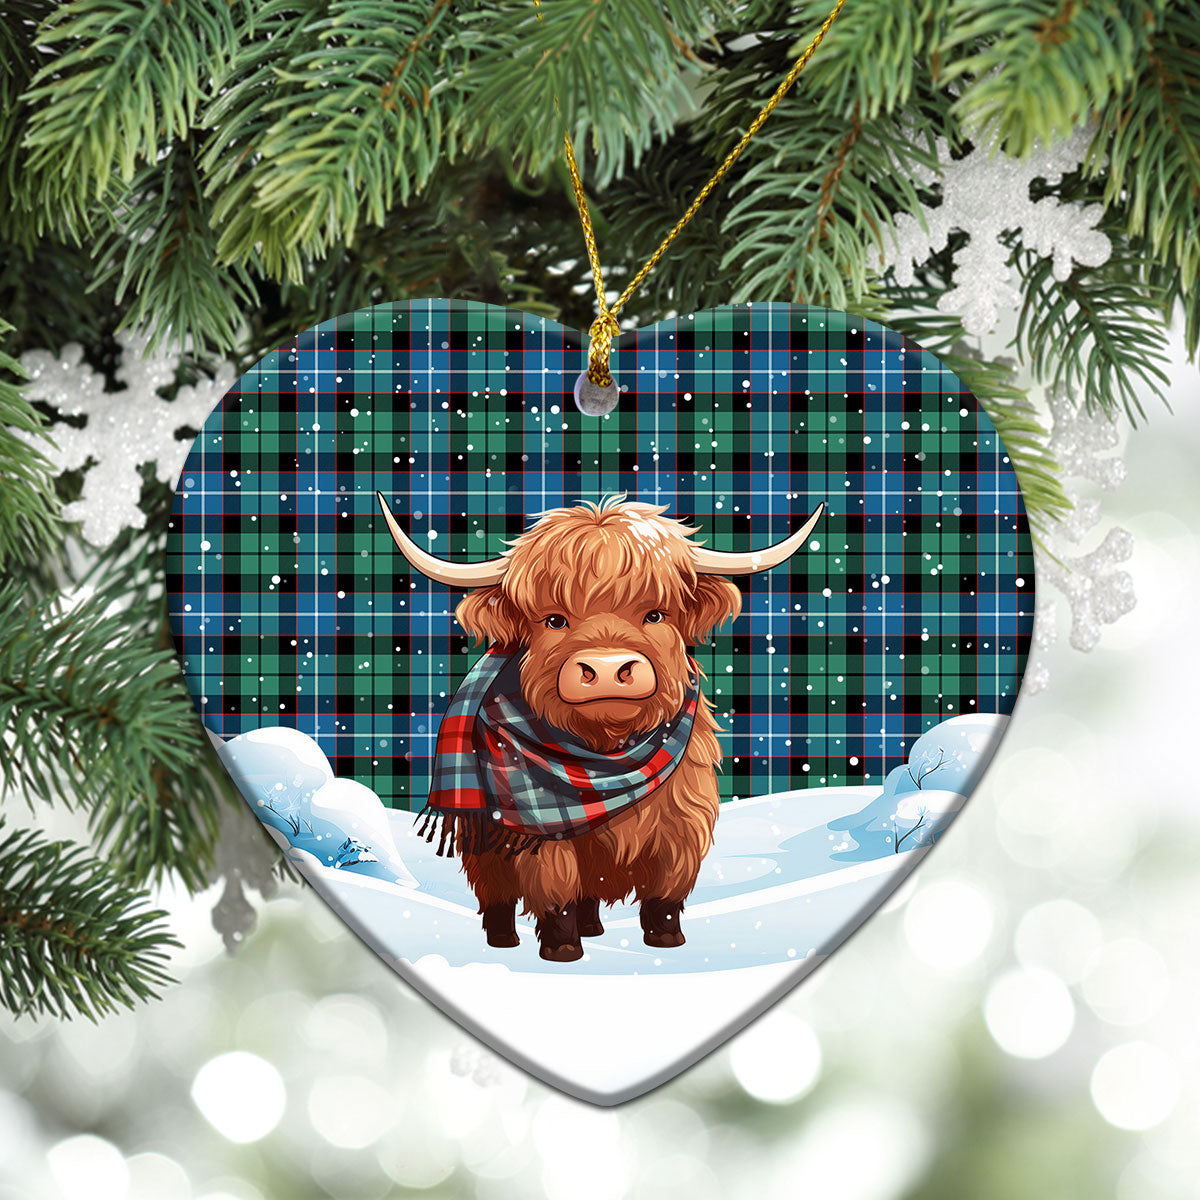 Galbraith Ancient Tartan Christmas Ceramic Ornament - Highland Cows Snow Style